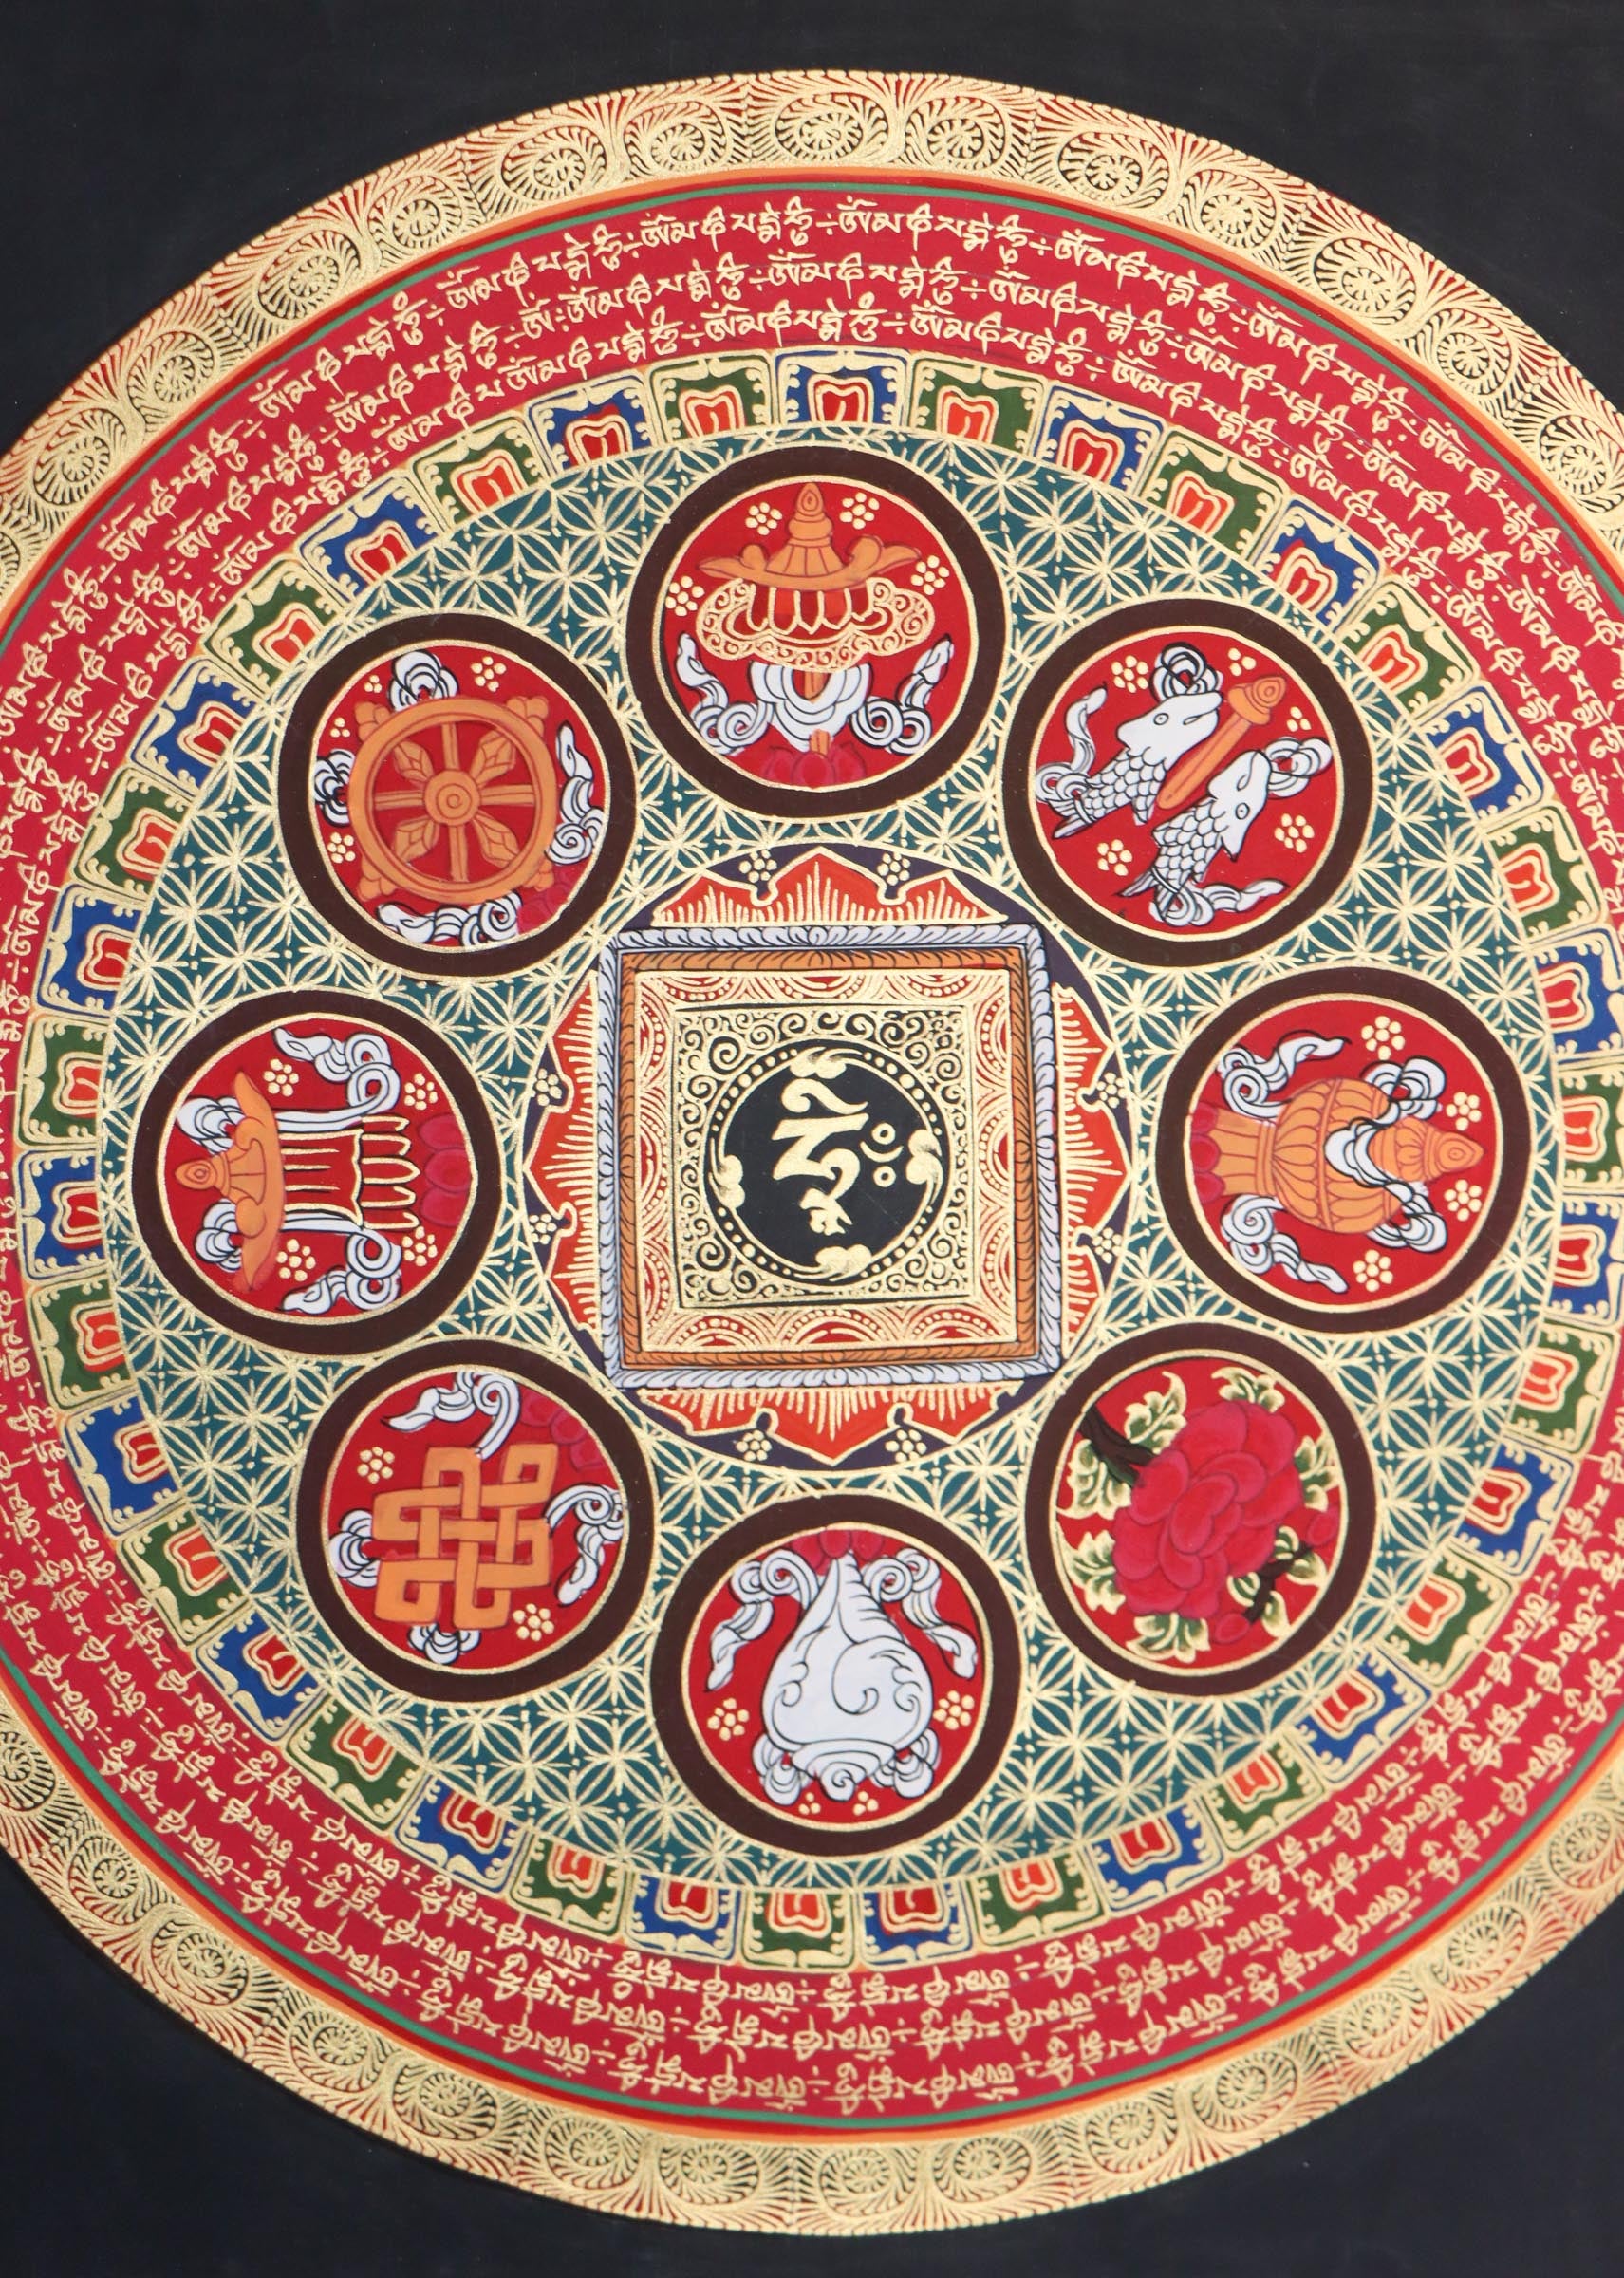 Mantra Mandala Thangka for wall decor .